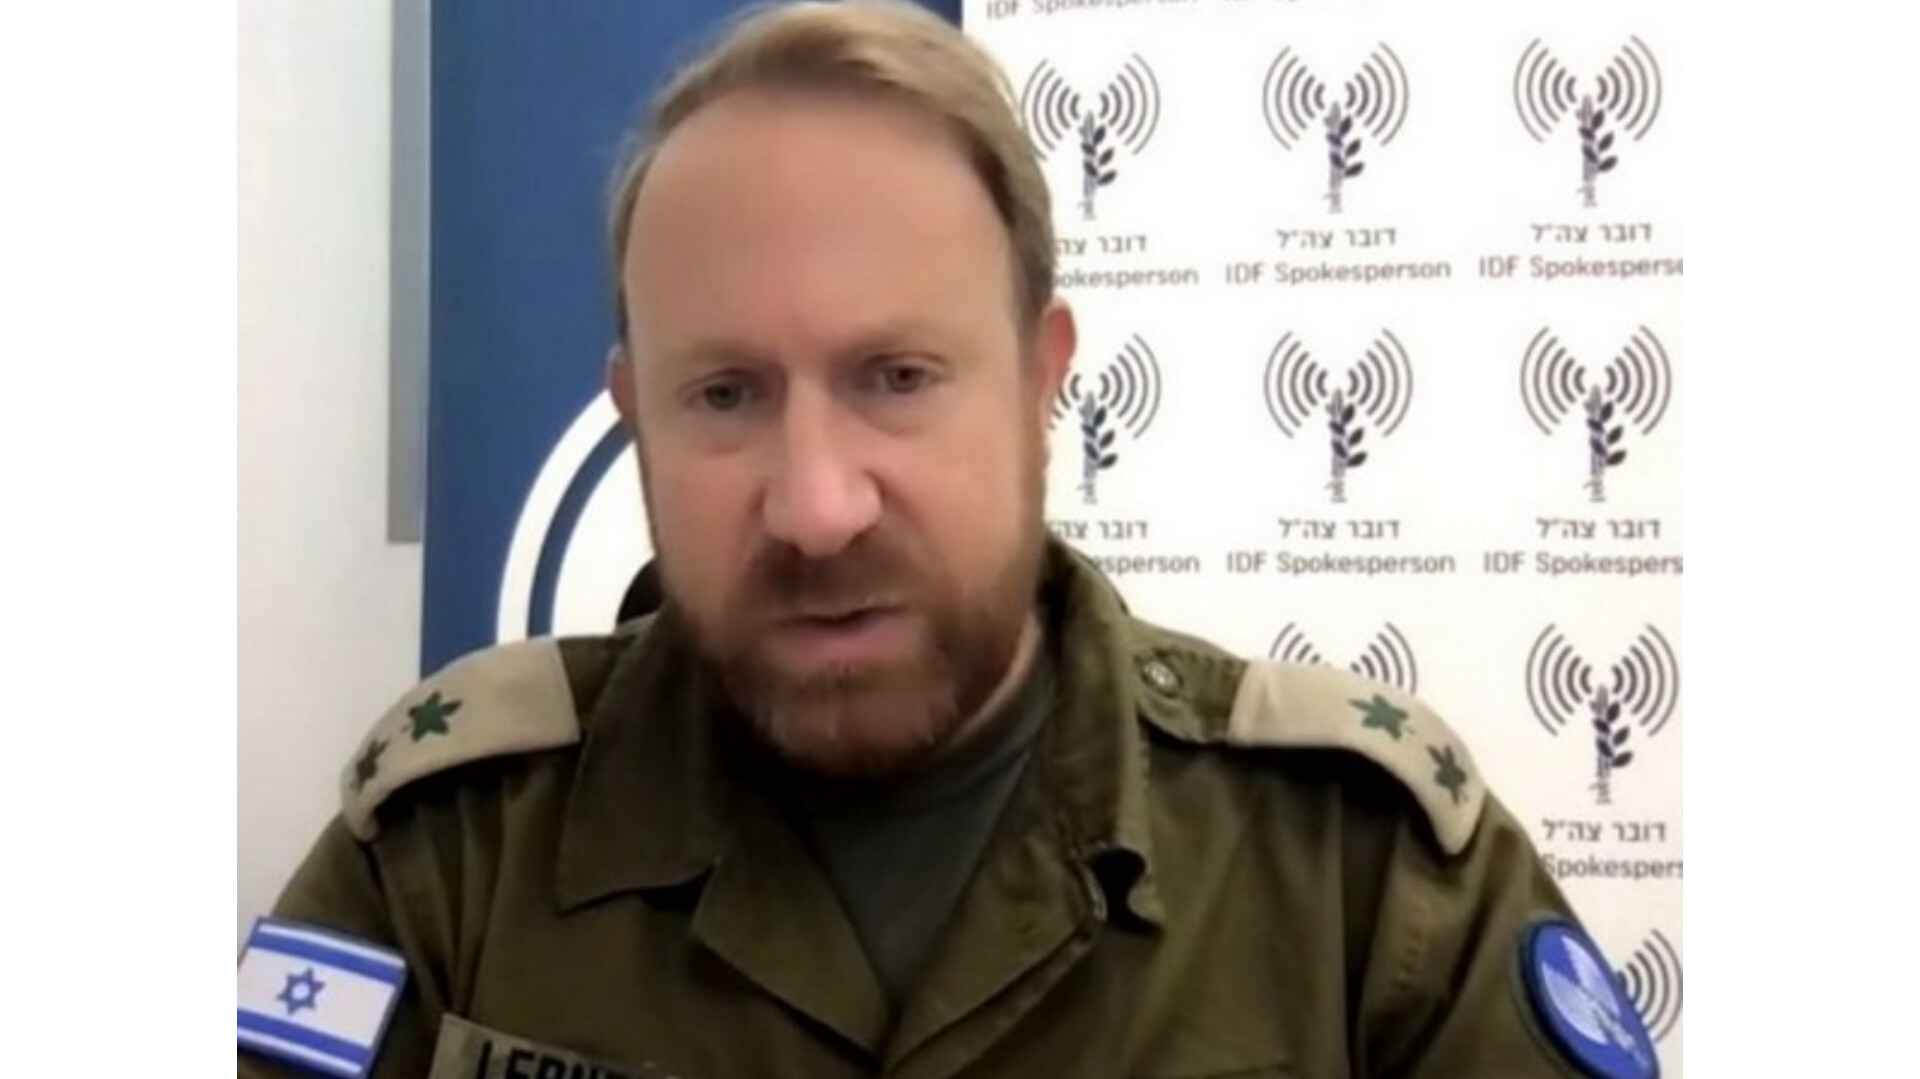 हम हमास को नष्ट करने के लिए कार्रवाई जारी रखेंगे: इज़राइल रक्षा बलों के प्रवक्ता